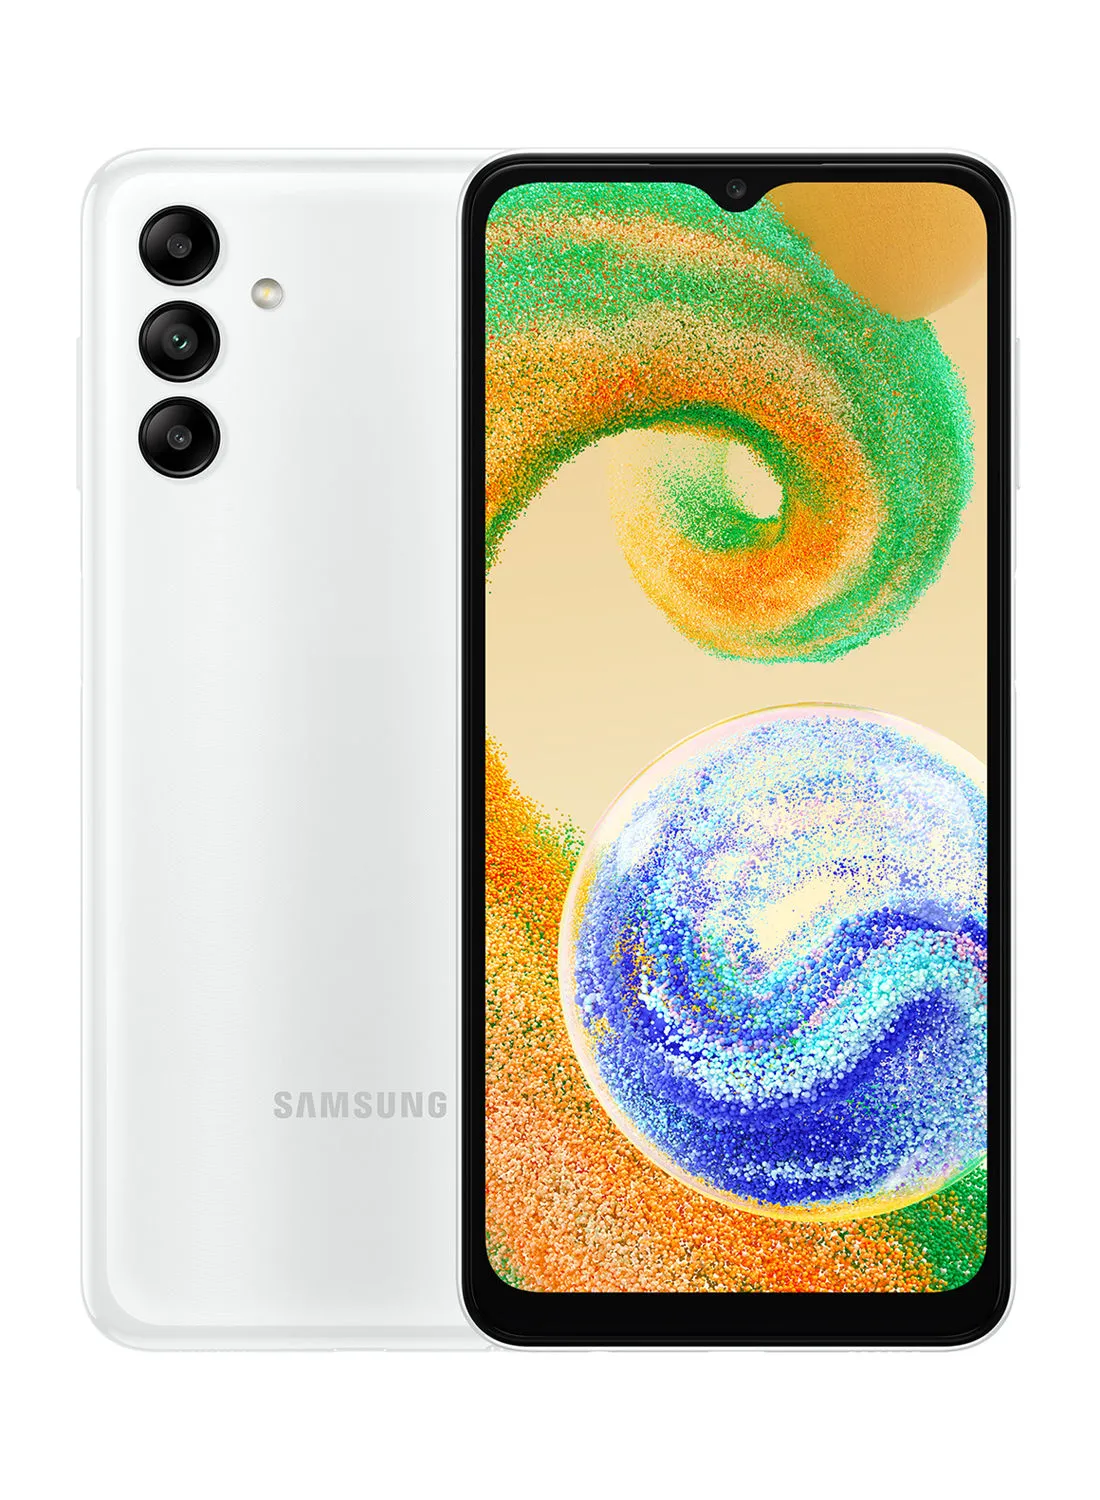 هاتف Samsung Galaxy A04s ثنائي الشريحة باللون الأبيض ، وذاكرة وصول عشوائي (RAM) سعة 3 جيجابايت ، وذاكرة داخلية سعة 32 جيجابايت ، ومزود بخدمة 4G LTE - إصدار الشرق الأوسط